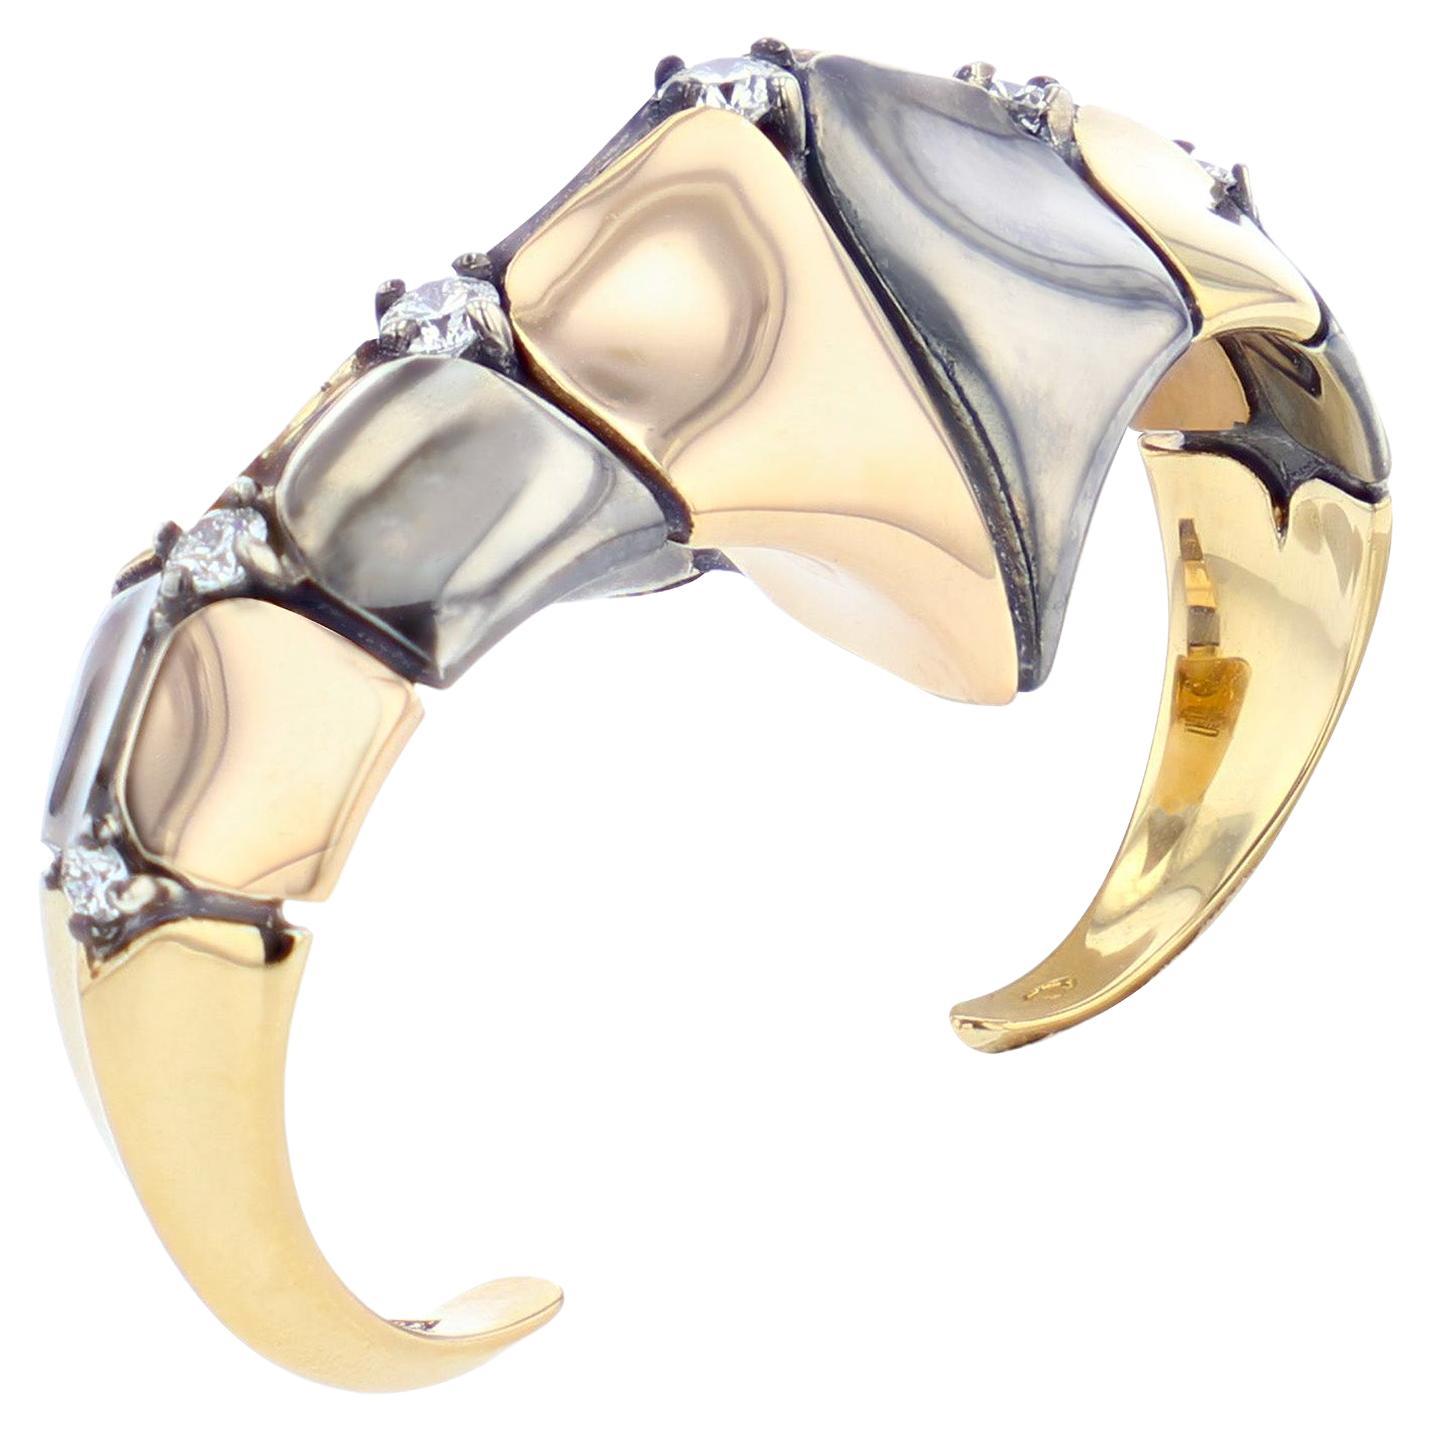 Bague double Dorsal en or jaune 18 carats et argent vieilli avec diamants par Elie Top